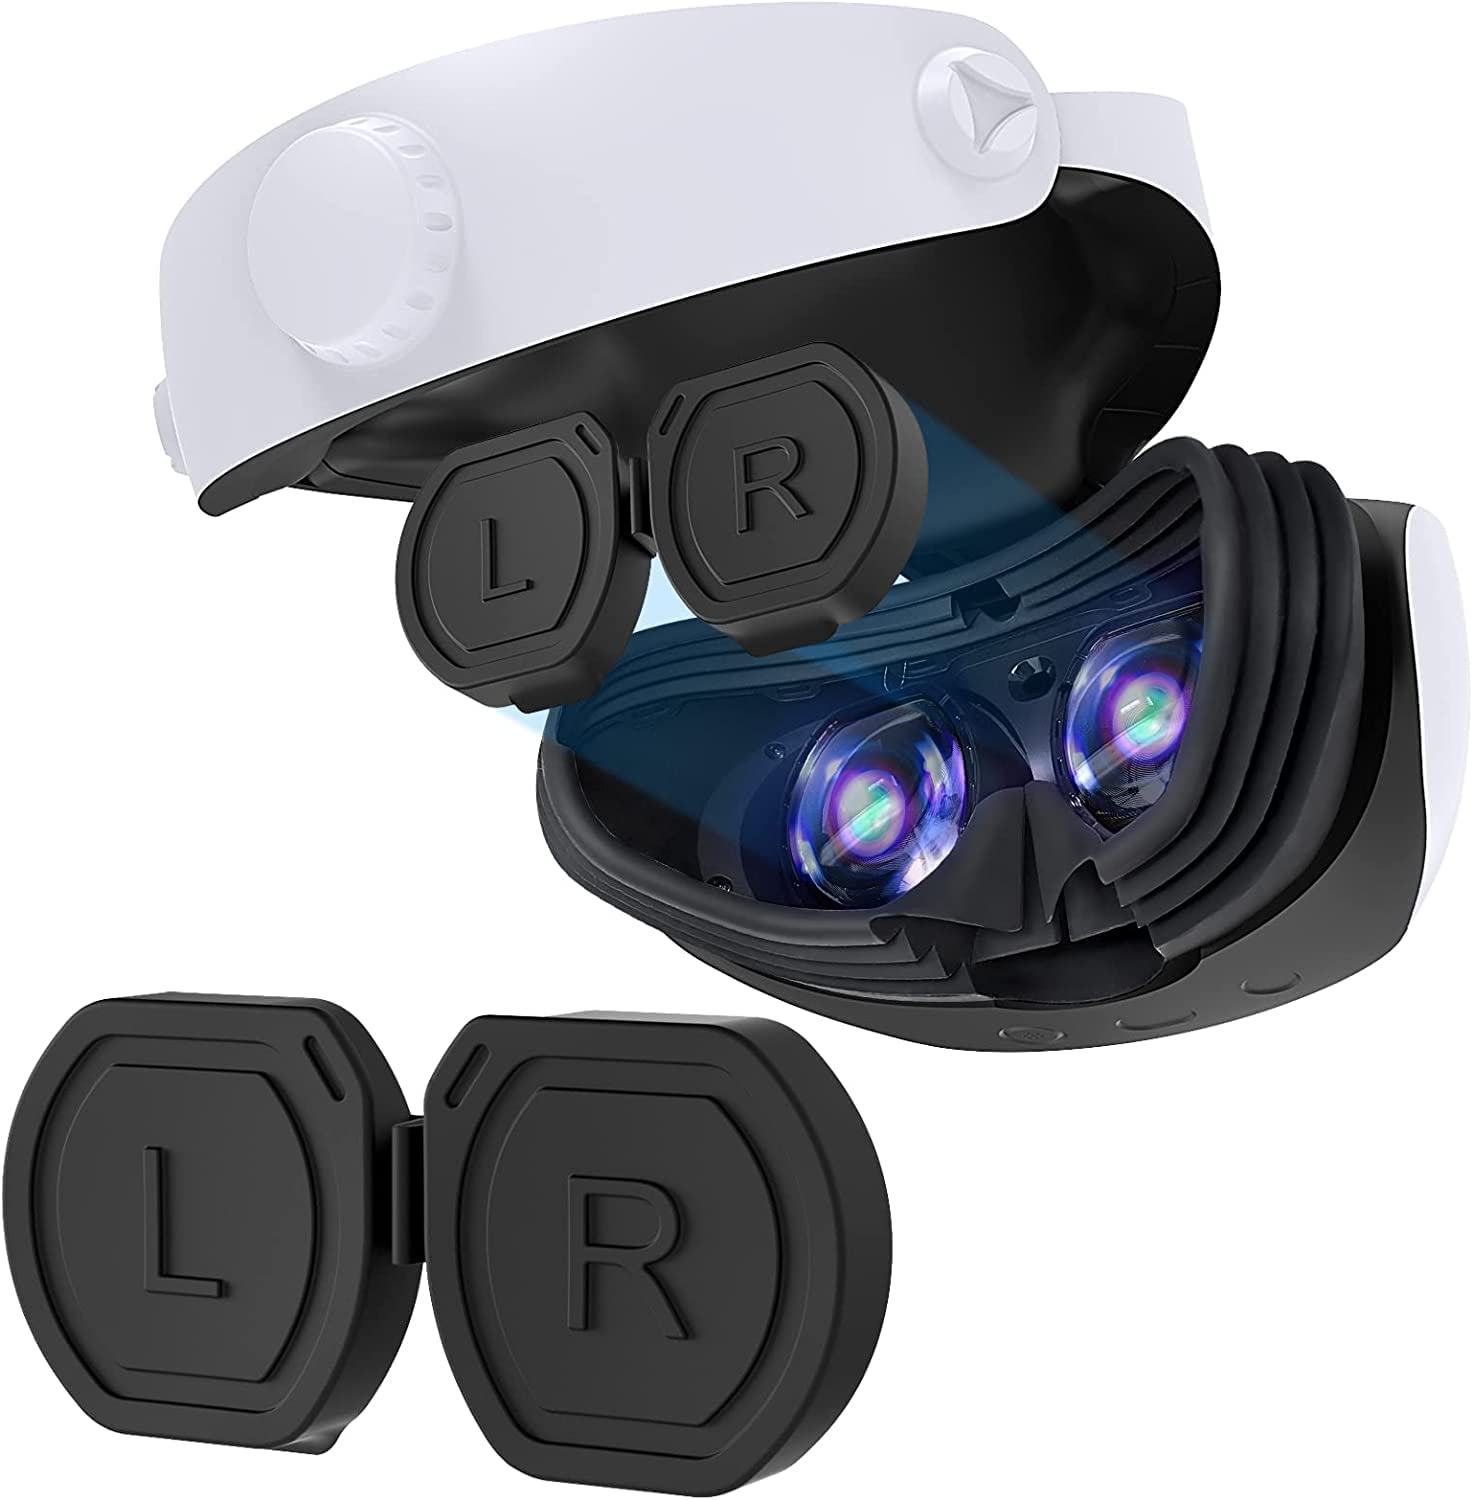 Capa de lente de silicone para PS VR2, capa protetora de peça única TwiHill para proteção de lente de óculos PSVR 2, tampa de lente anti-riscos à prova de poeira para acessórios de protetor de lente Playstation VR2-para PS VR2